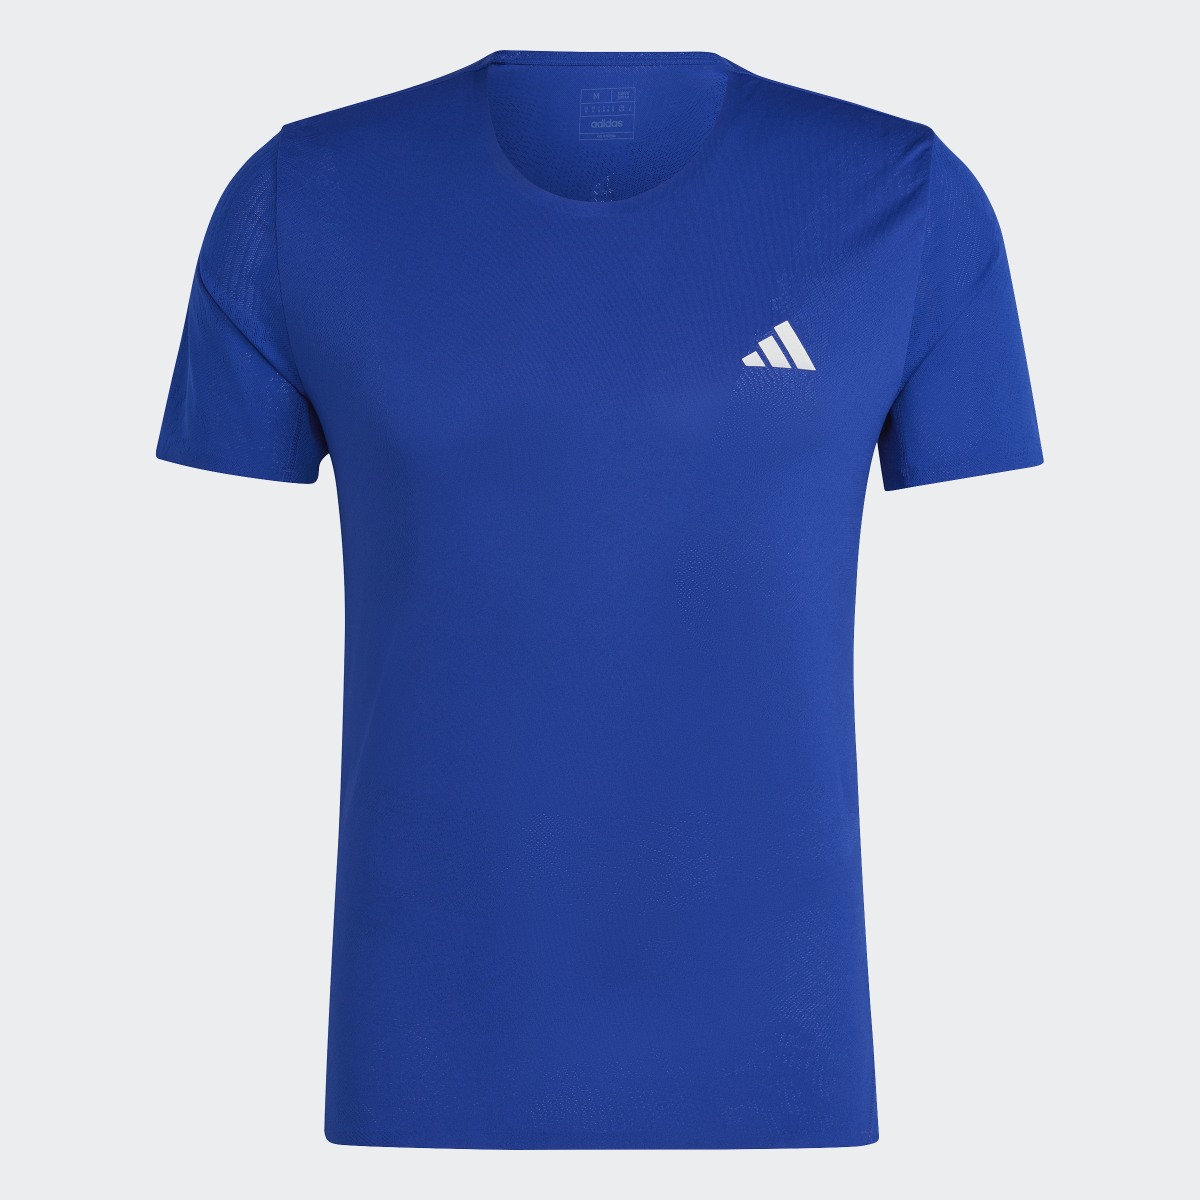 Adidas Adizero T-Shirt. 5